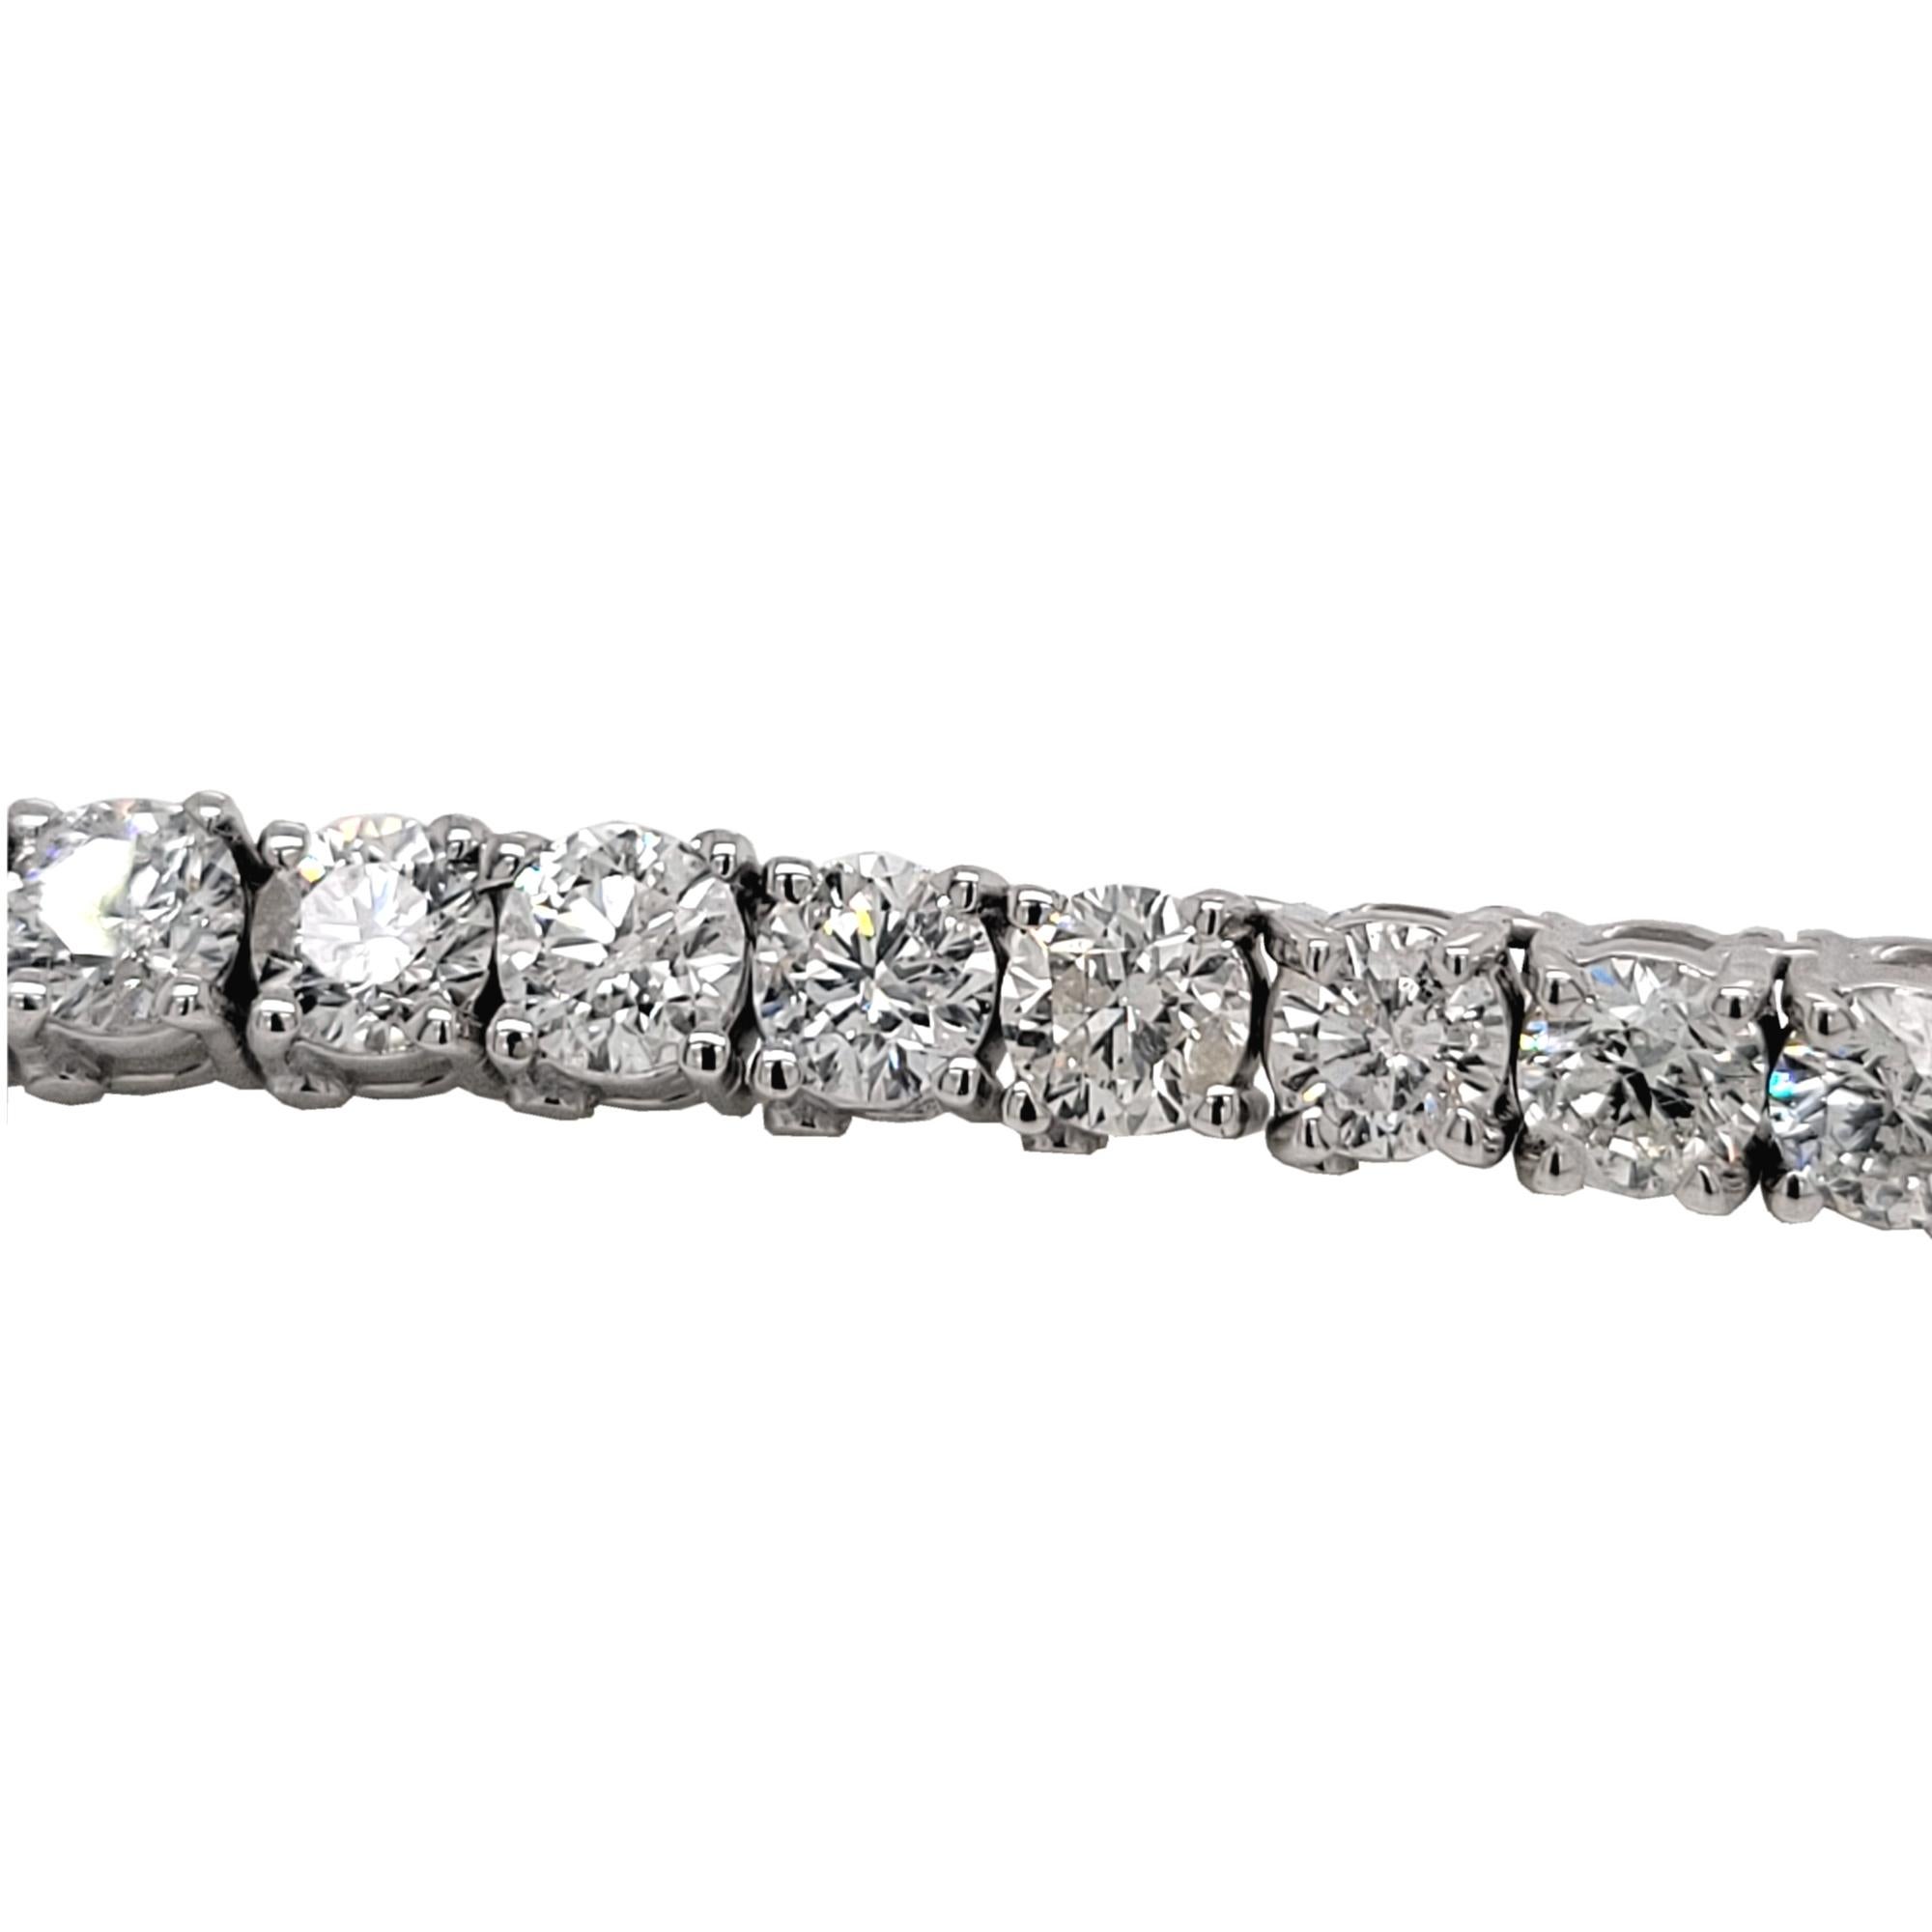 Diese Diamant-Tennis-Halskette besteht aus 141 Gliedern, die mit 4 runden Brillanten von 4 mm Durchmesser in 14K Gold gefasst sind. 
Die Länge beträgt 24 Zoll.  
Gesamtgewicht der Diamanten: 38,55 Karat 
Gesamtgewicht des Armbands: 51,6 gr